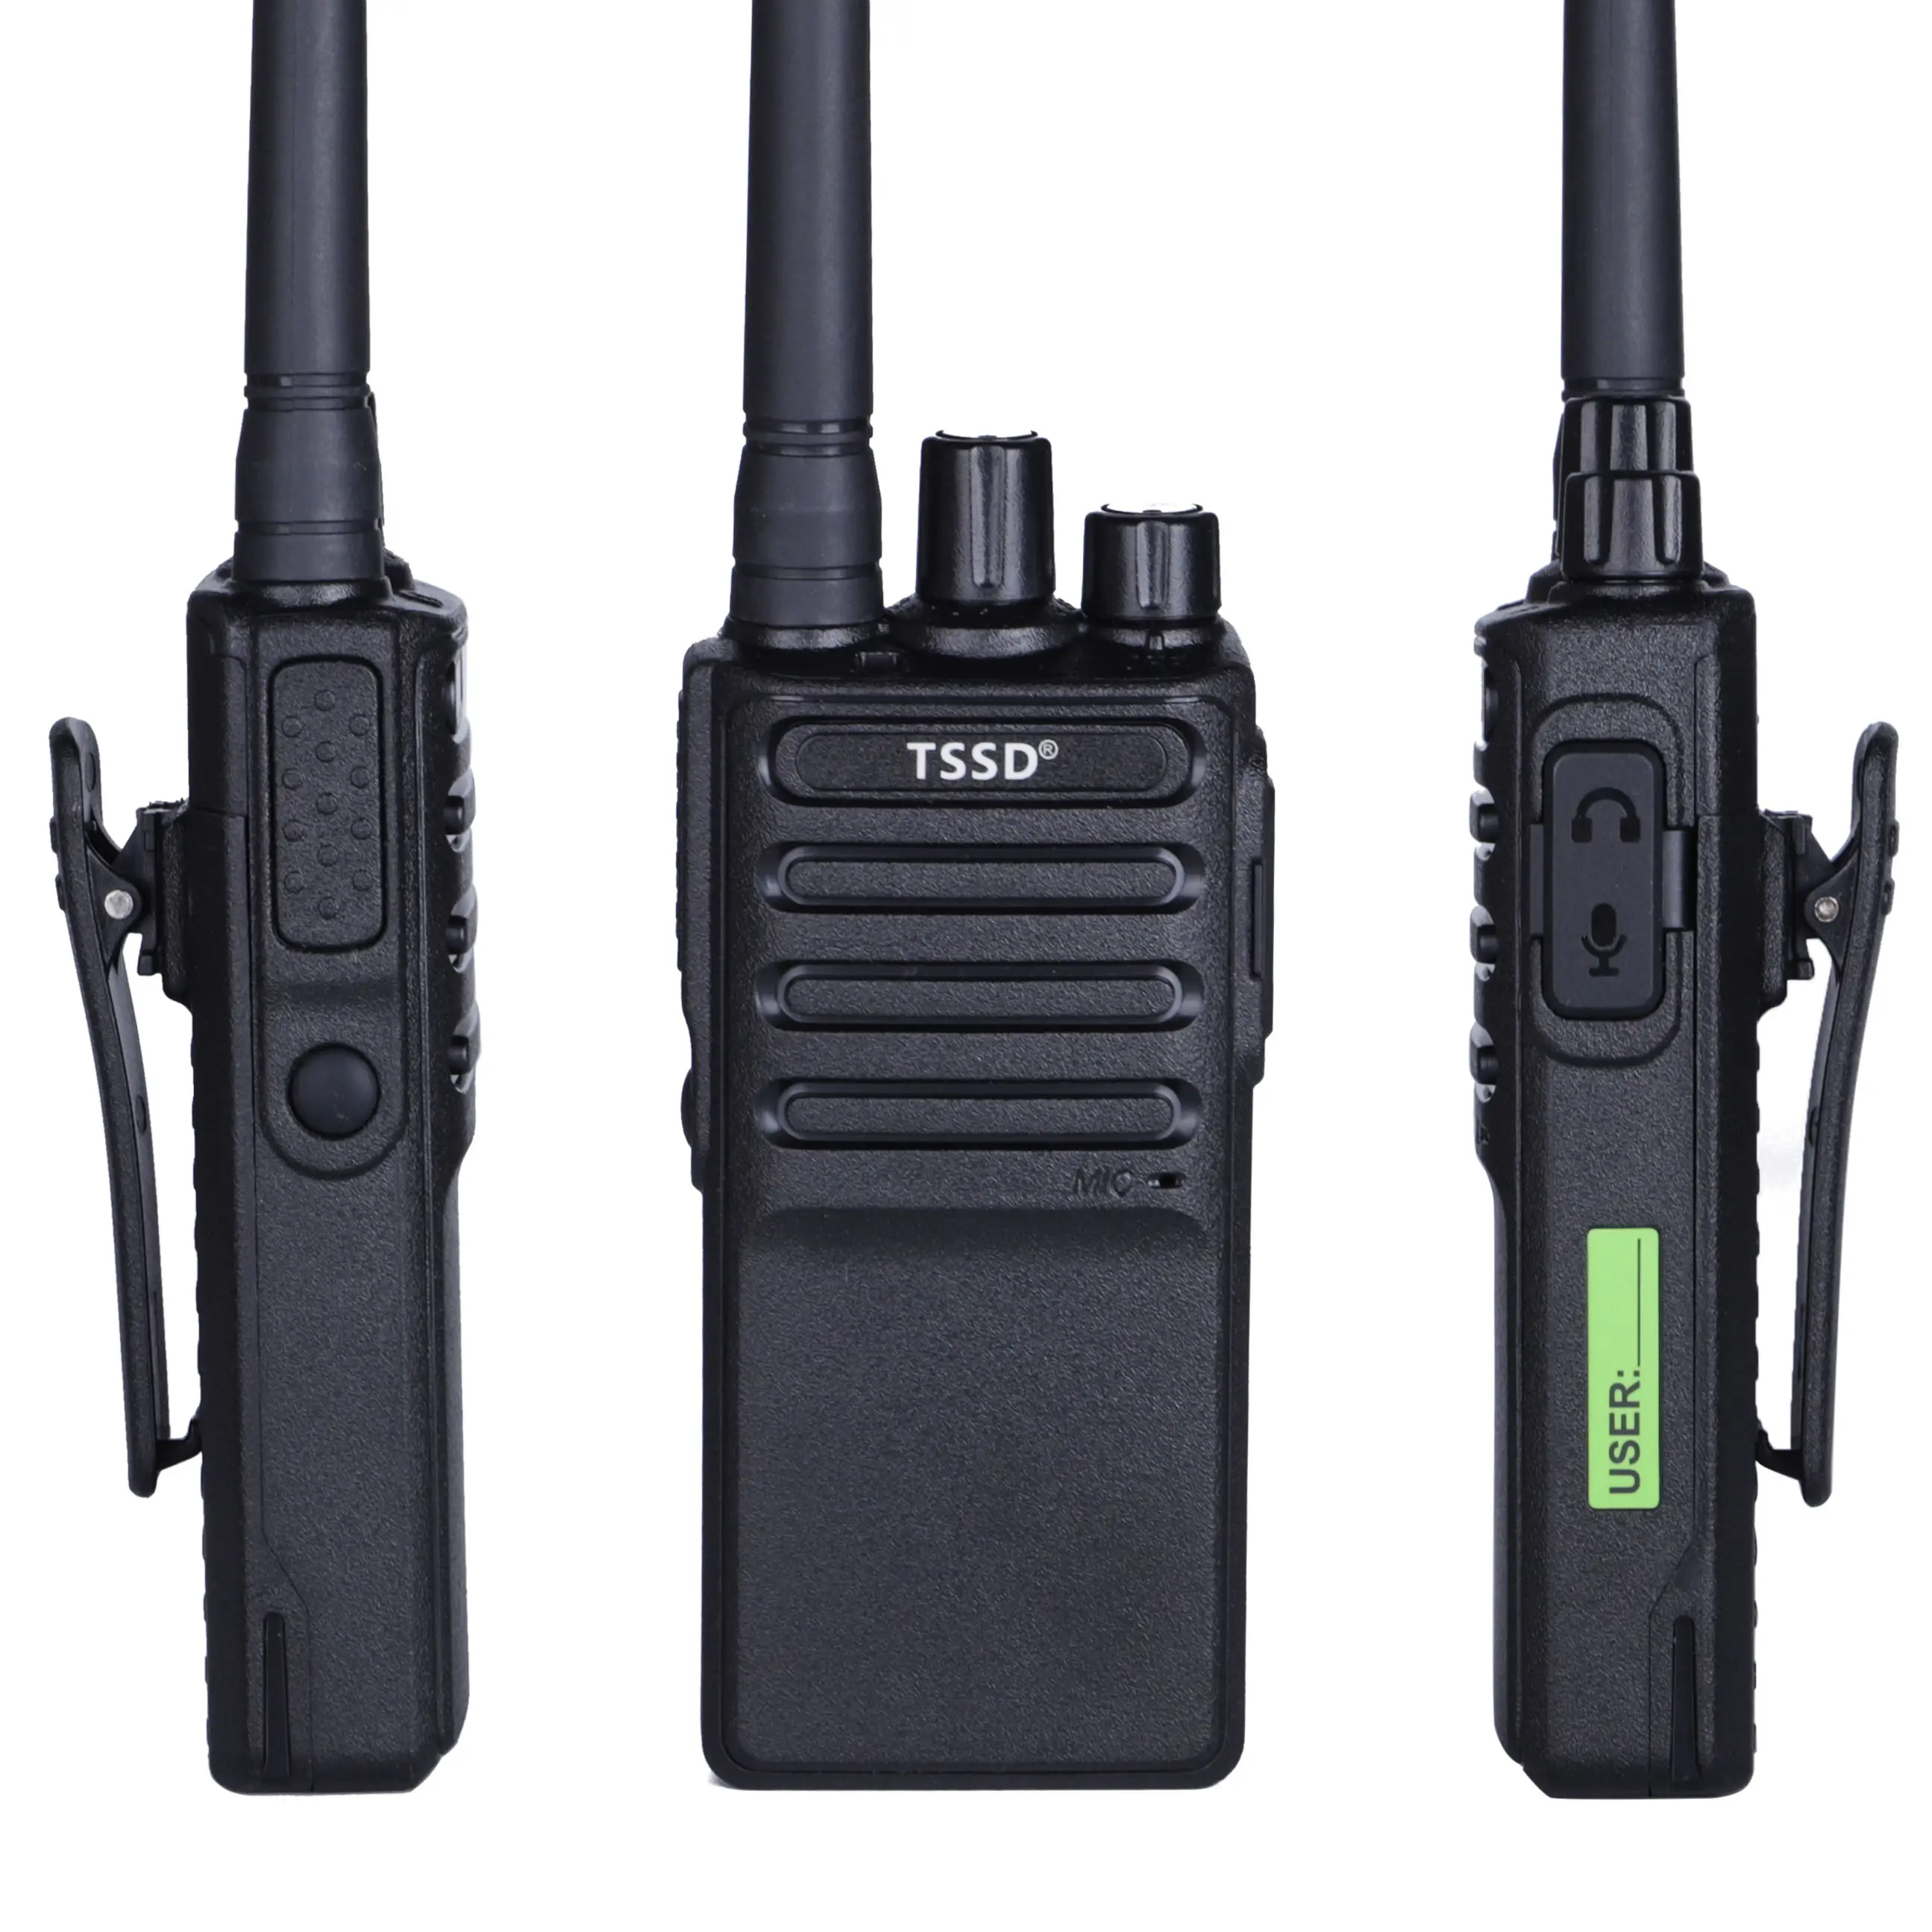 Tssd TS-K68 nuovo arrivo UHF MINI interfono bidirezionale Poc mini handy radio ricaricabile bambini cellulare radio portatile esterna